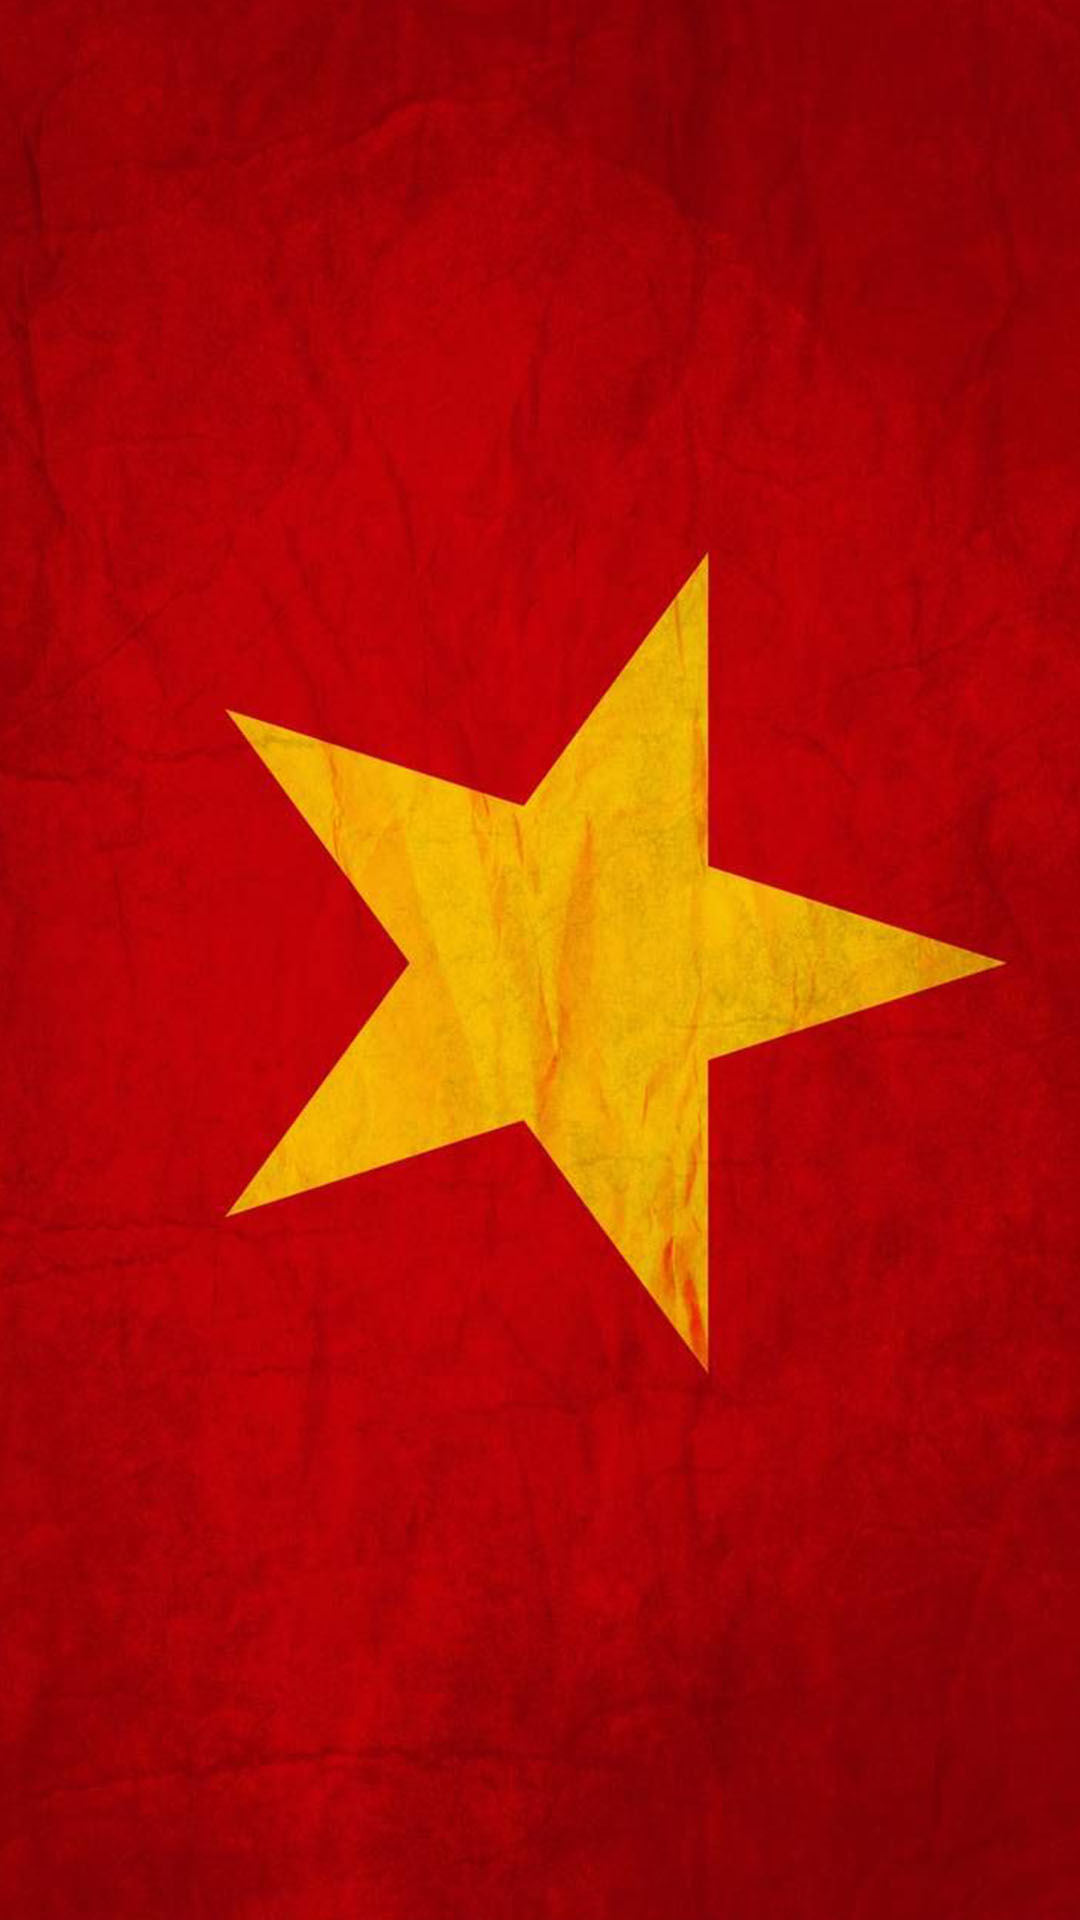 Một hình nền đẹp làm nổi bật vẻ đẹp của cờ Việt Nam là điều mà ai chúng ta đều cần có. Với những hình ảnh nền đặc sắc này, bạn có thể tạo ra một không gian làm việc đầy cảm hứng và tình yêu đất nước.